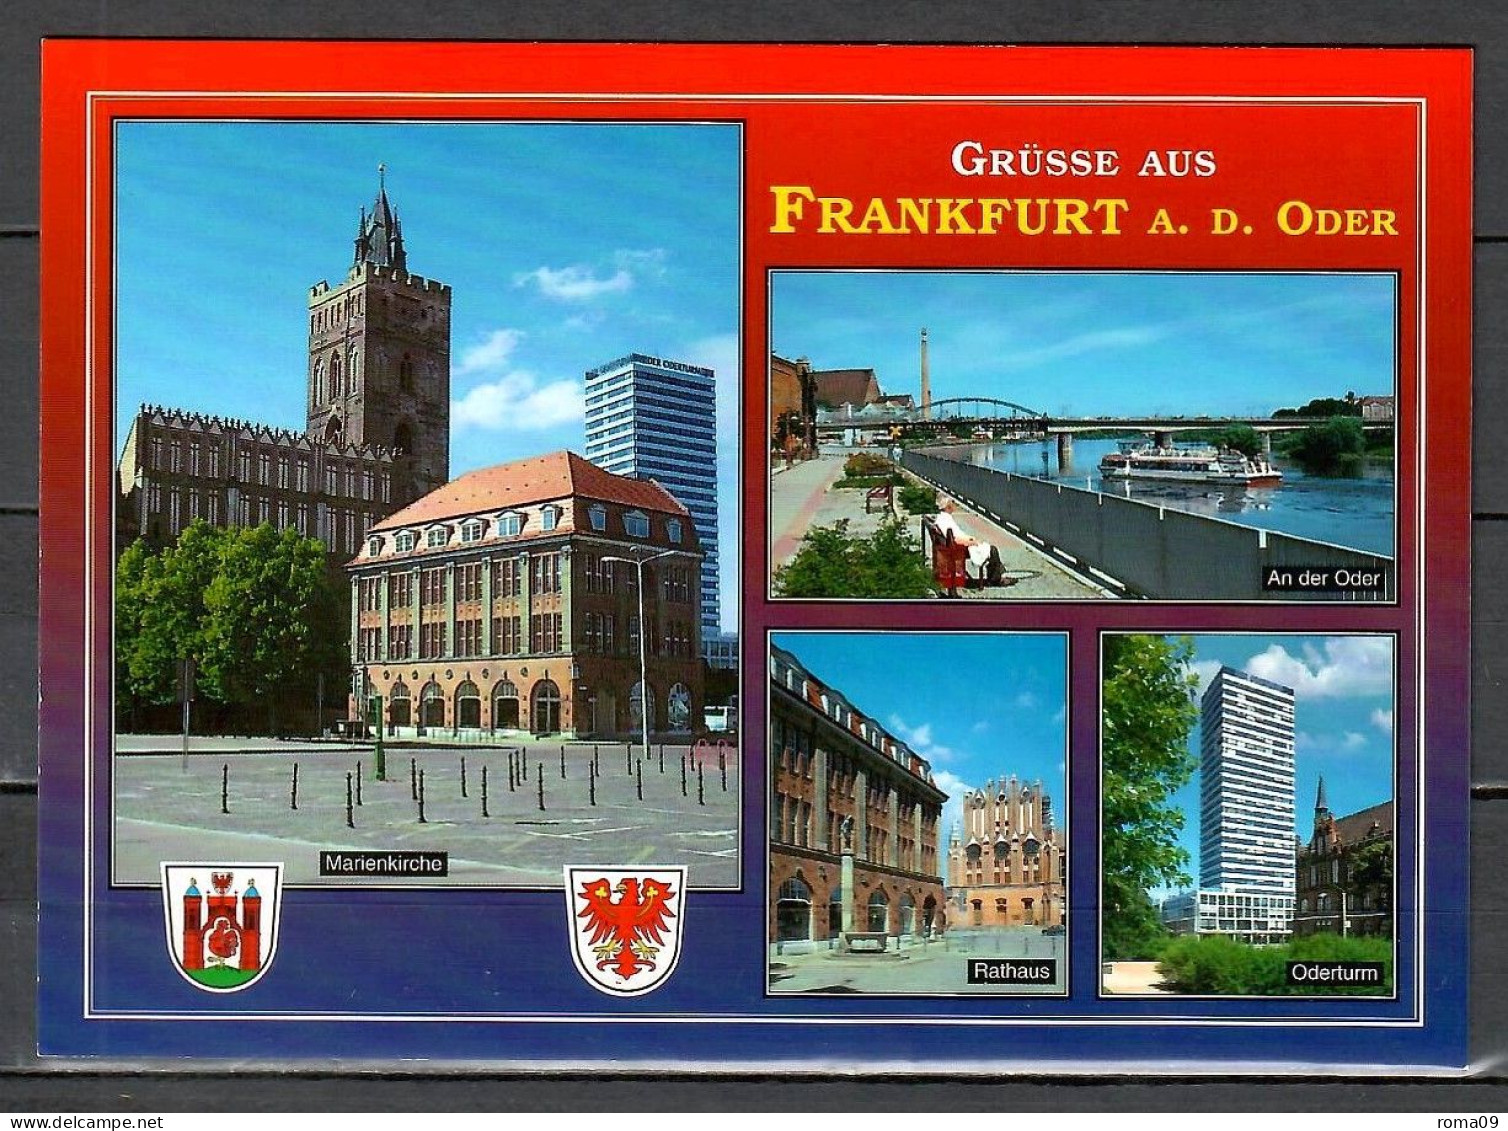 Frankfurt A.d. Oder, Marienkirche, Rathaus, Oderturm; B-444 - Frankfurt A. D. Oder